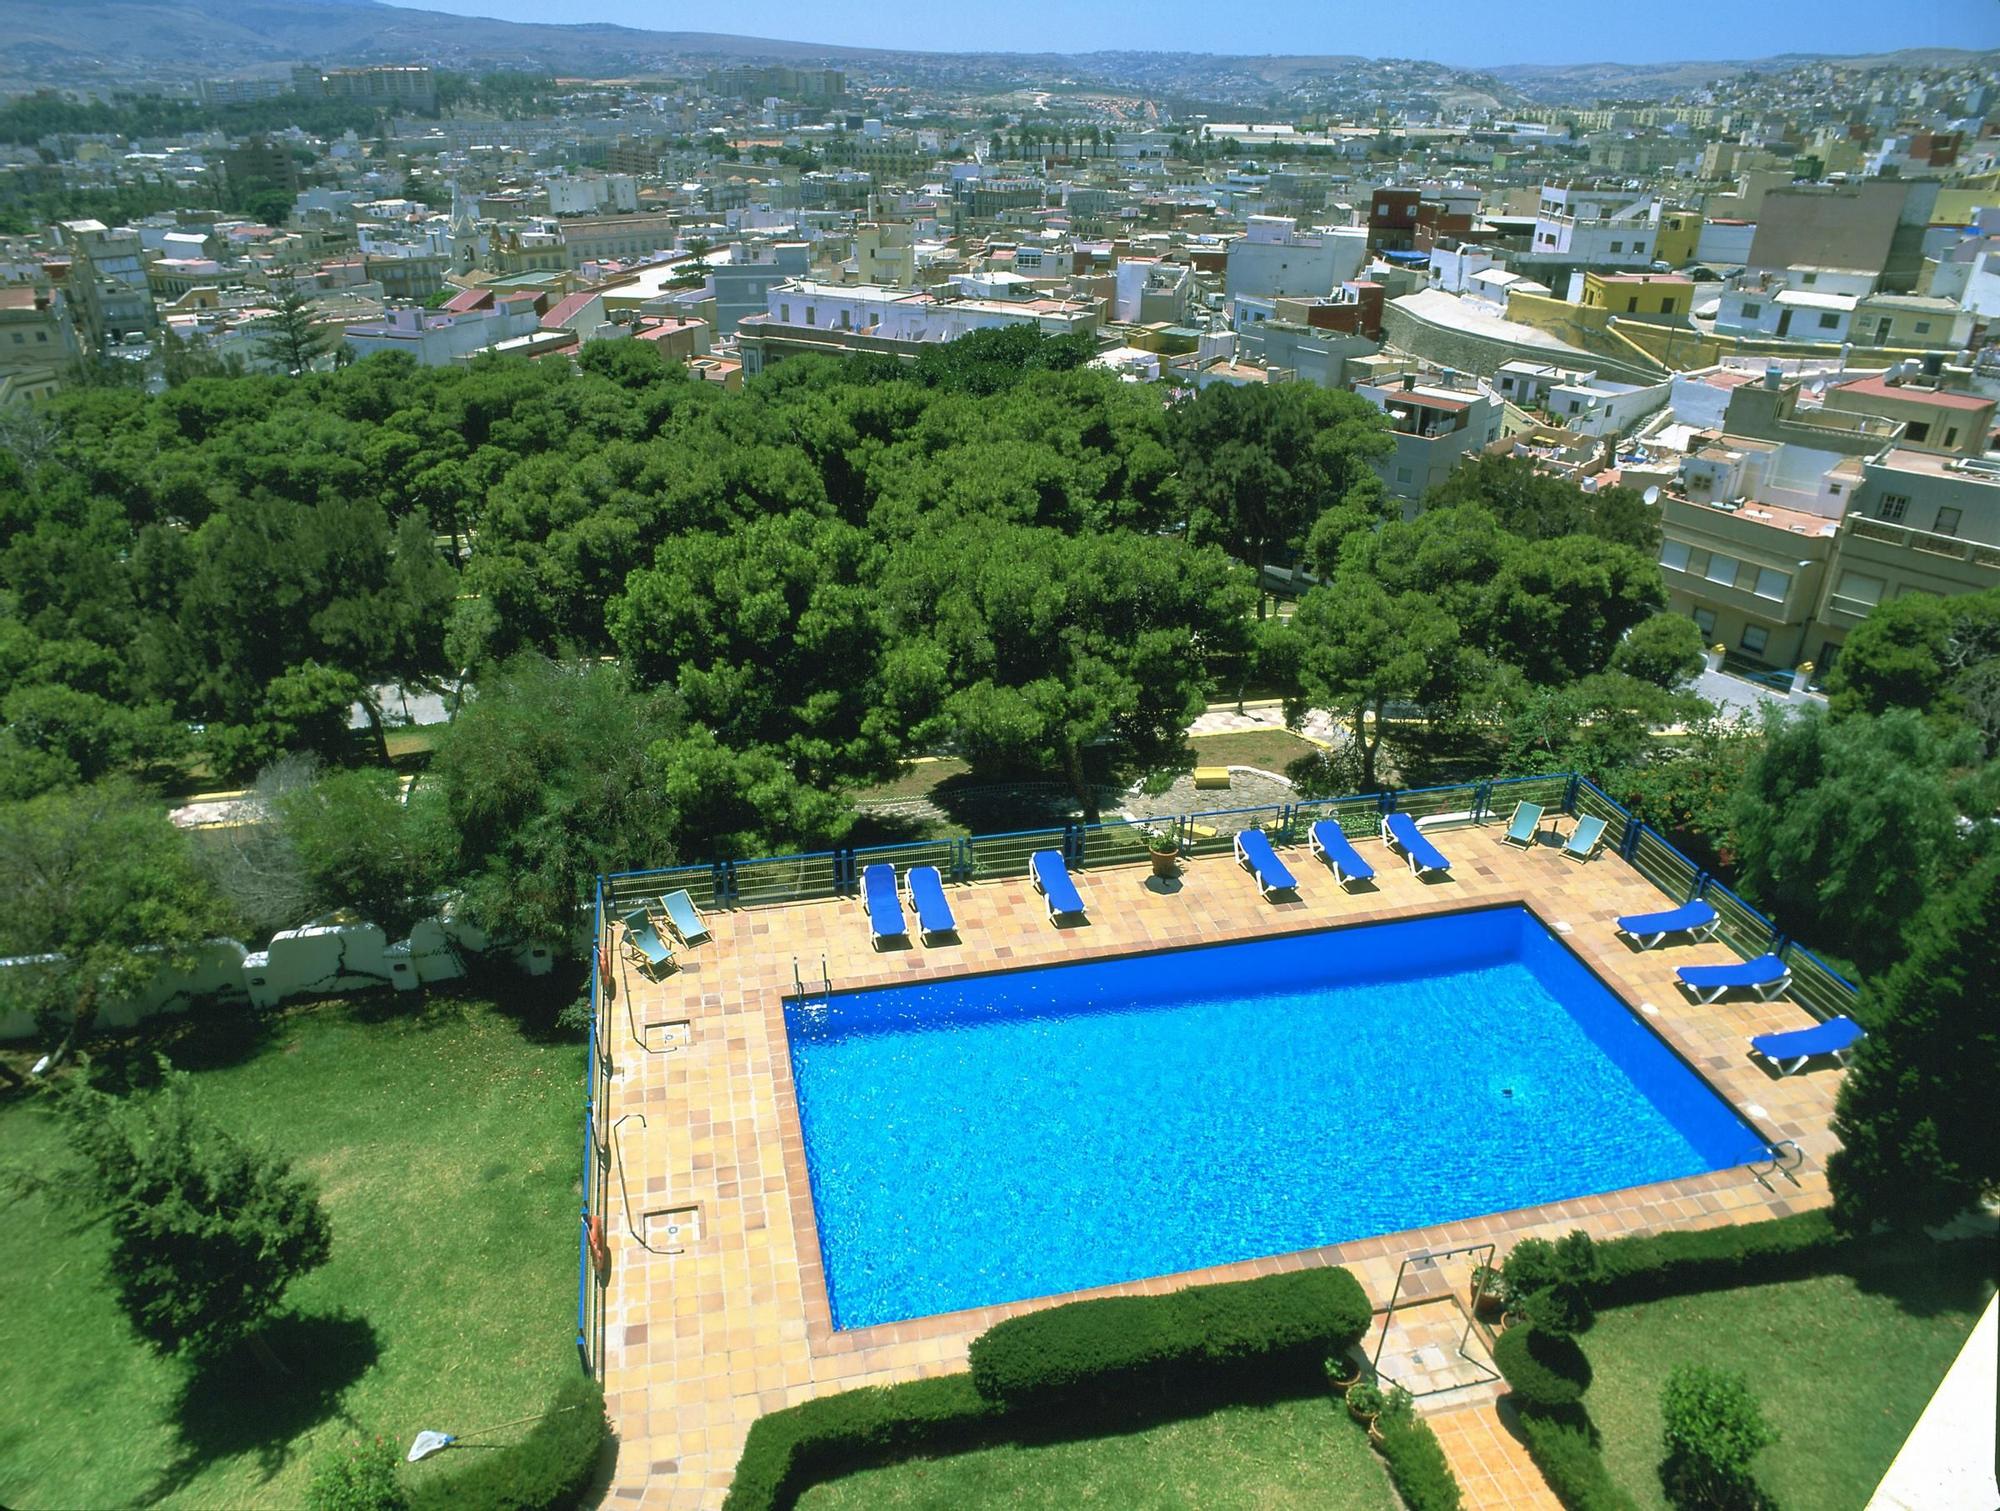 El Parador de Melilla posee una piscina para refrescarse después de un día de excursiones.